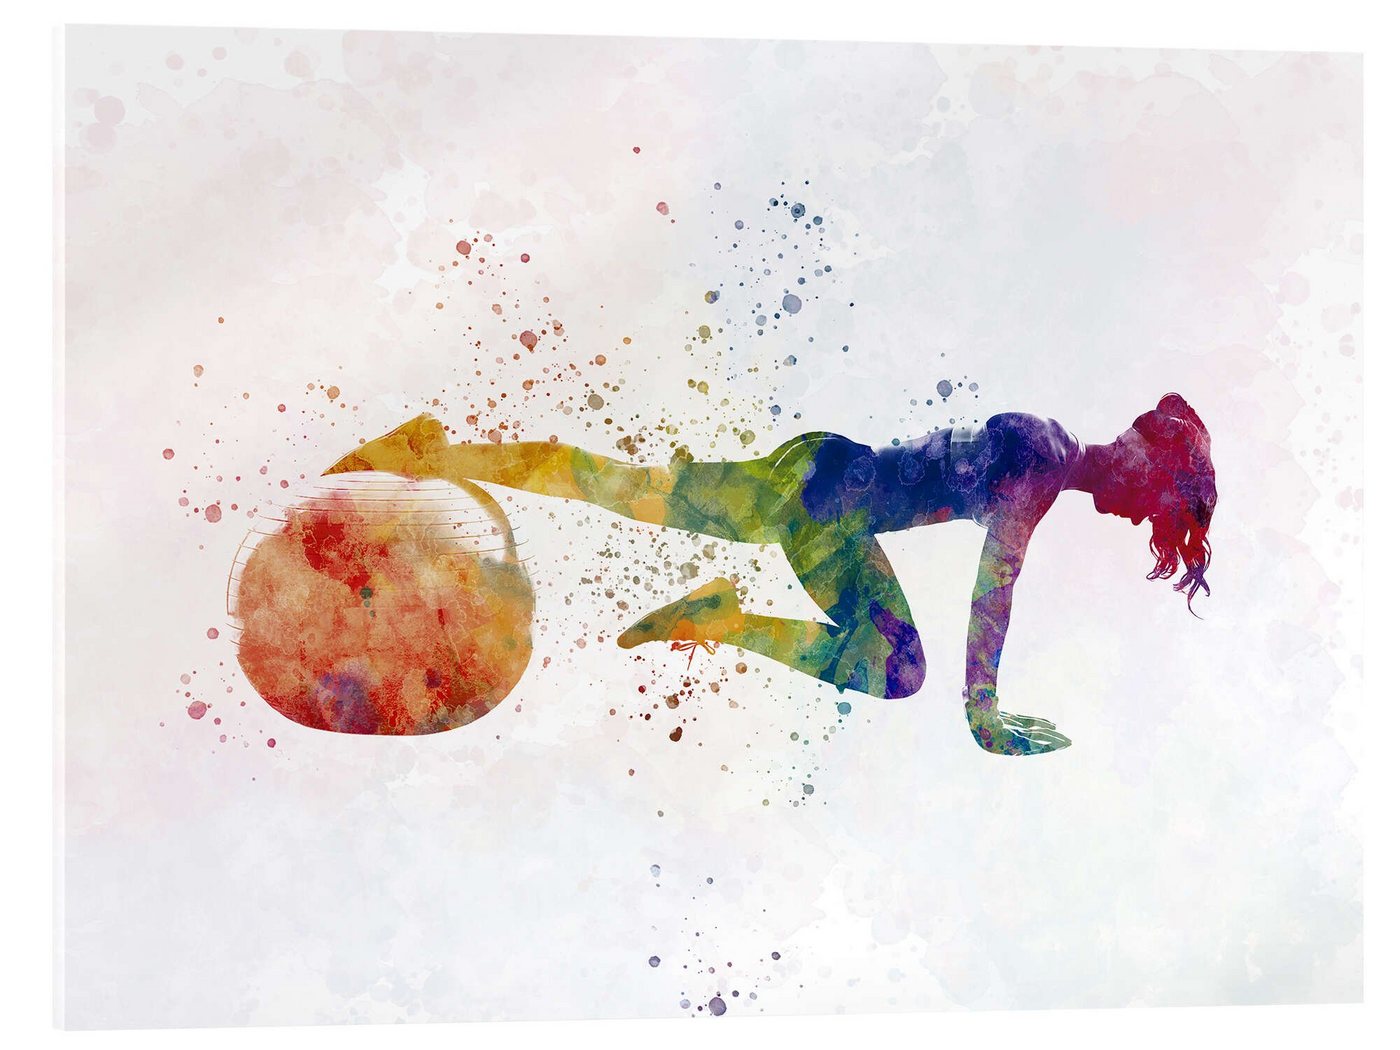 Posterlounge Acrylglasbild nobelart, Fitnessübung mit einem Ball VII, Fitnessraum Illustration von Posterlounge